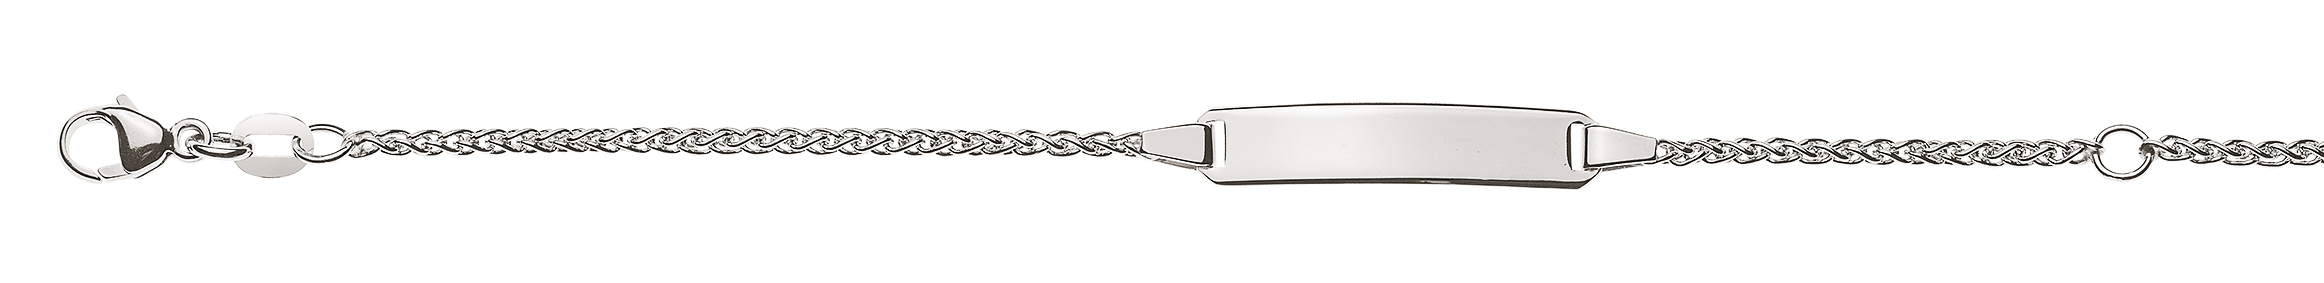 AURONOS Élégance ID-Bracelet en or blanc 14k Chaîne de tresses 18cm